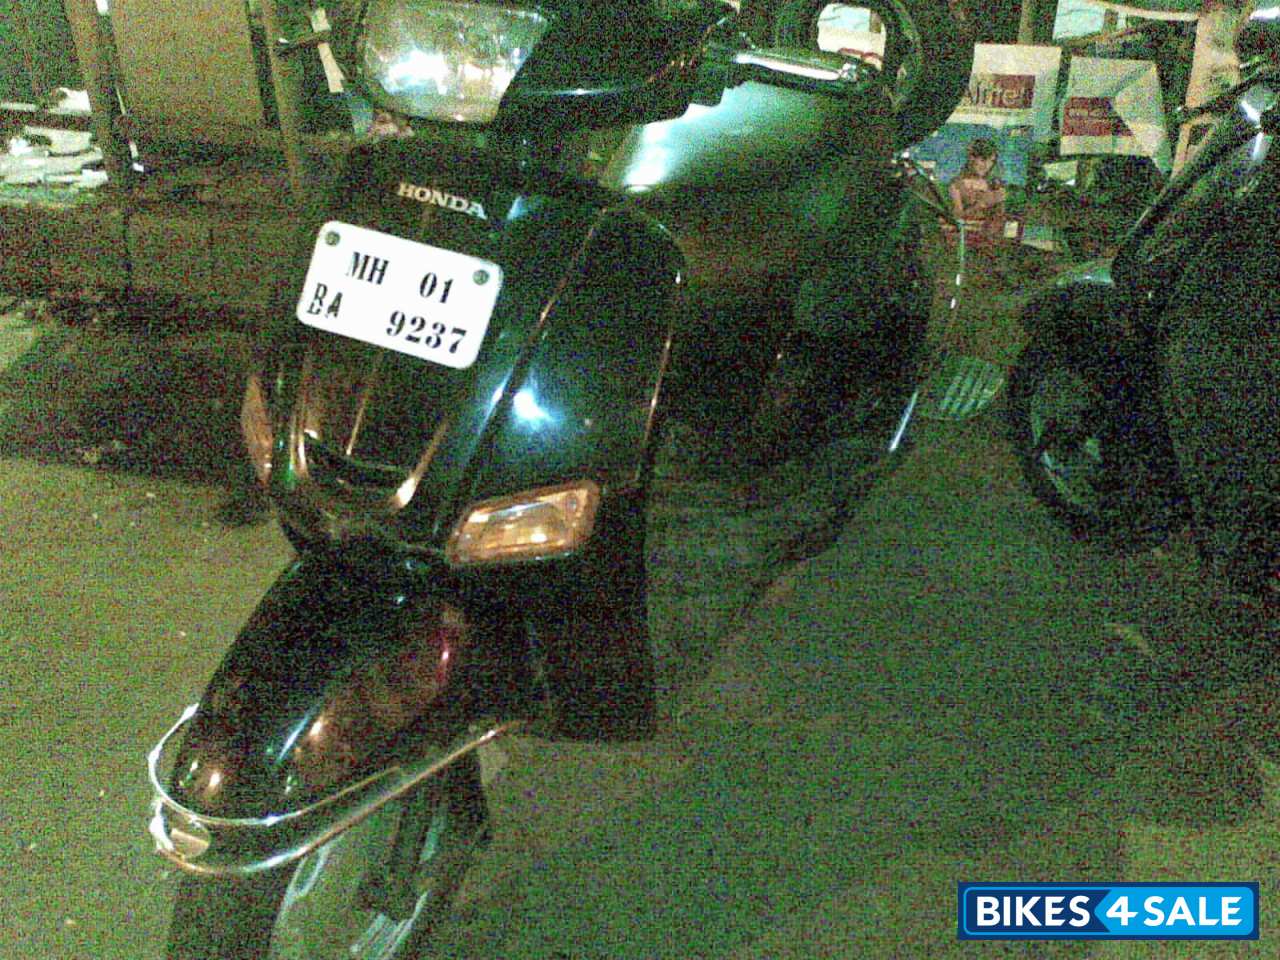 Honda eterno for sale in mumbai #2